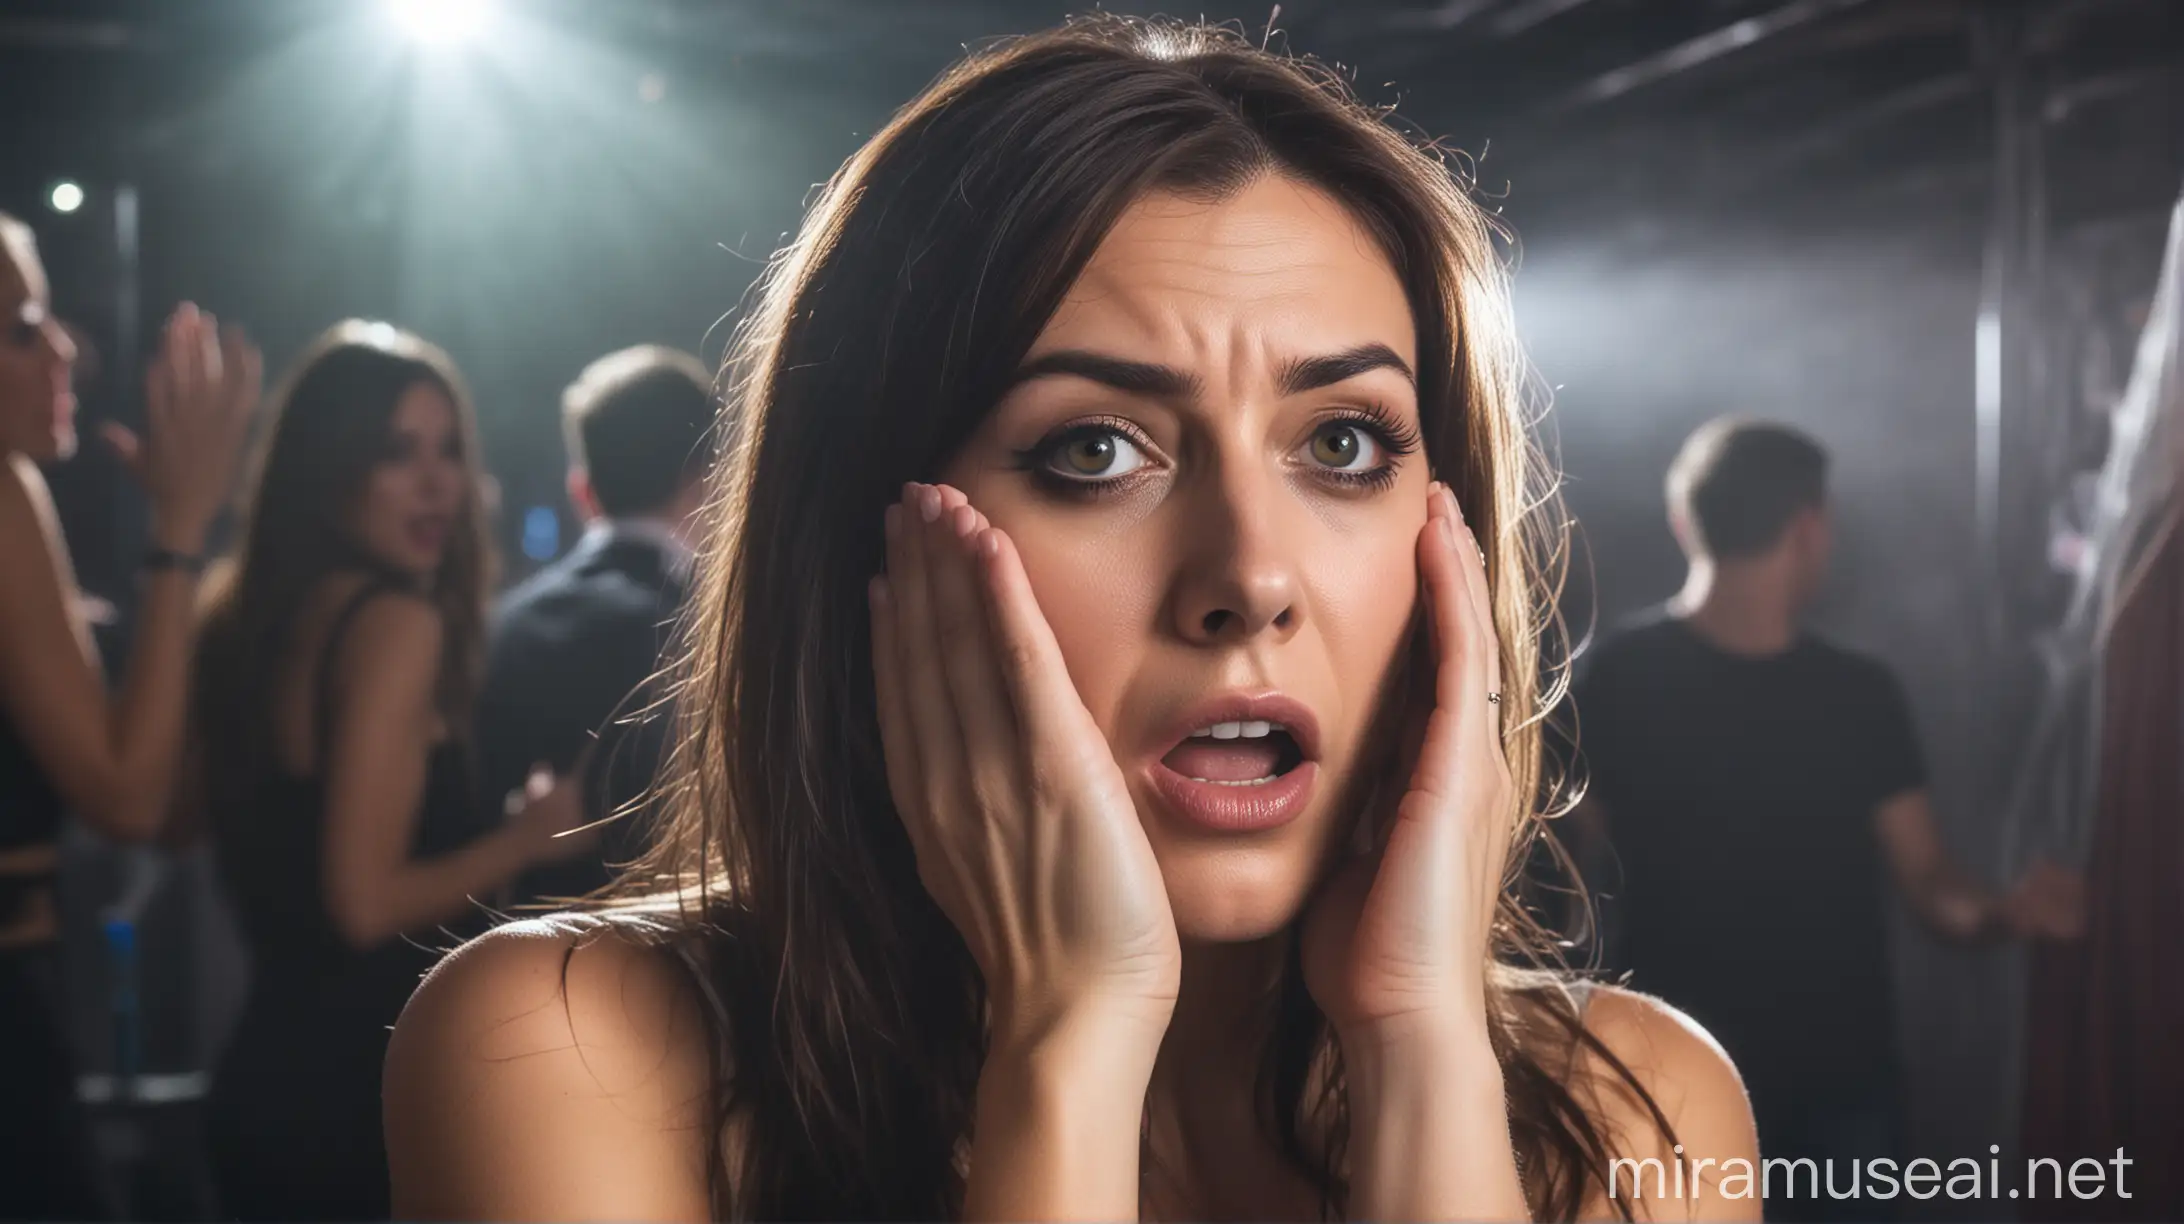 Anxious Woman Concealing Herself in Nightclub Atmosphere